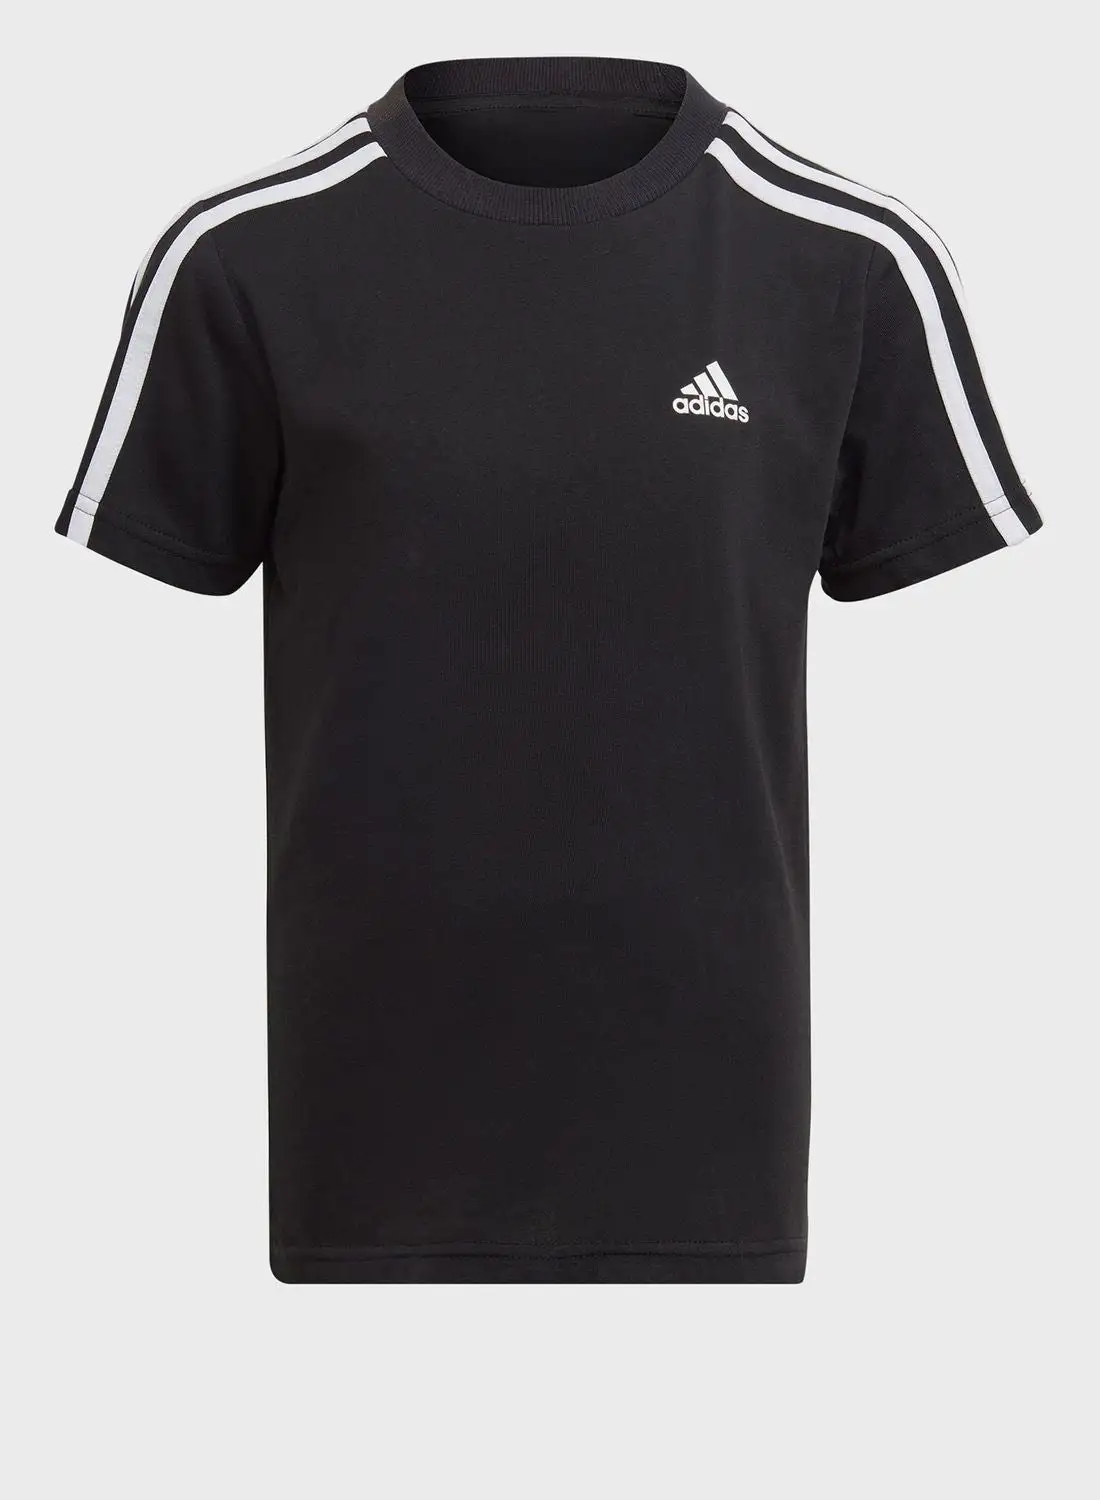 Adidas Little Kids 3 Stripes T-Shirt